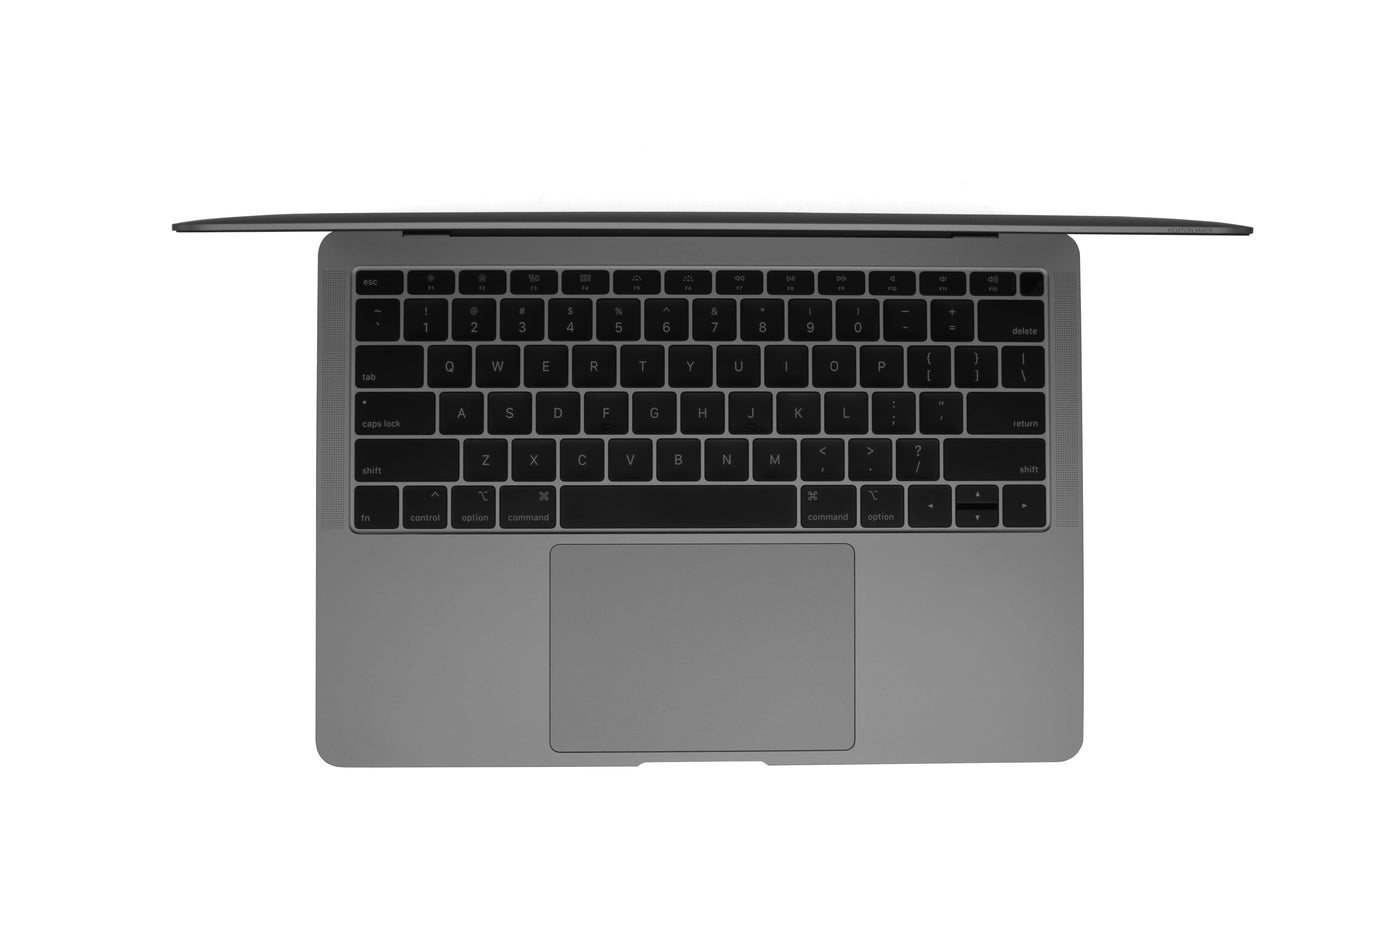 Apple MacBook Air 13-inch MacBook Air 13-inch Core i5 1.6GHz (Space Grey, 2019) - Fair